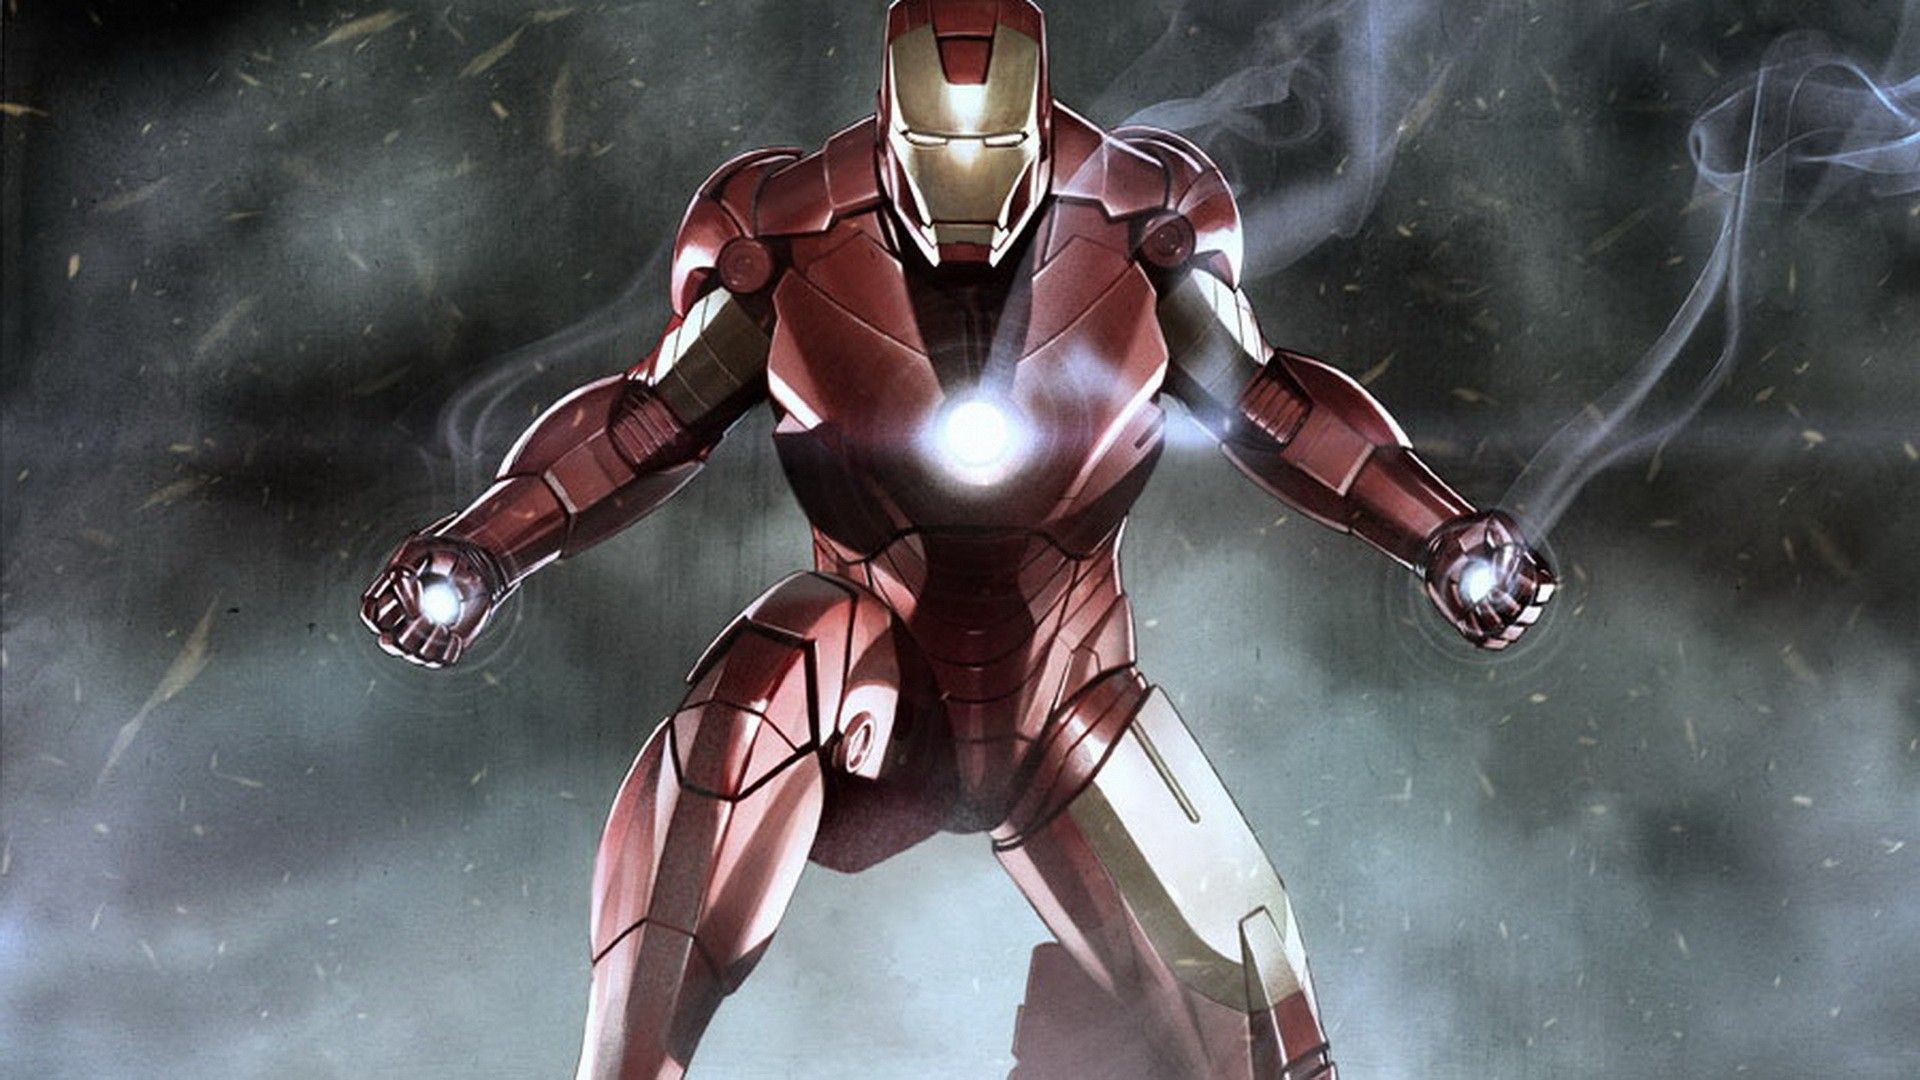 Iron Man HD Wallpaper | 1920x1080 | ID:36269